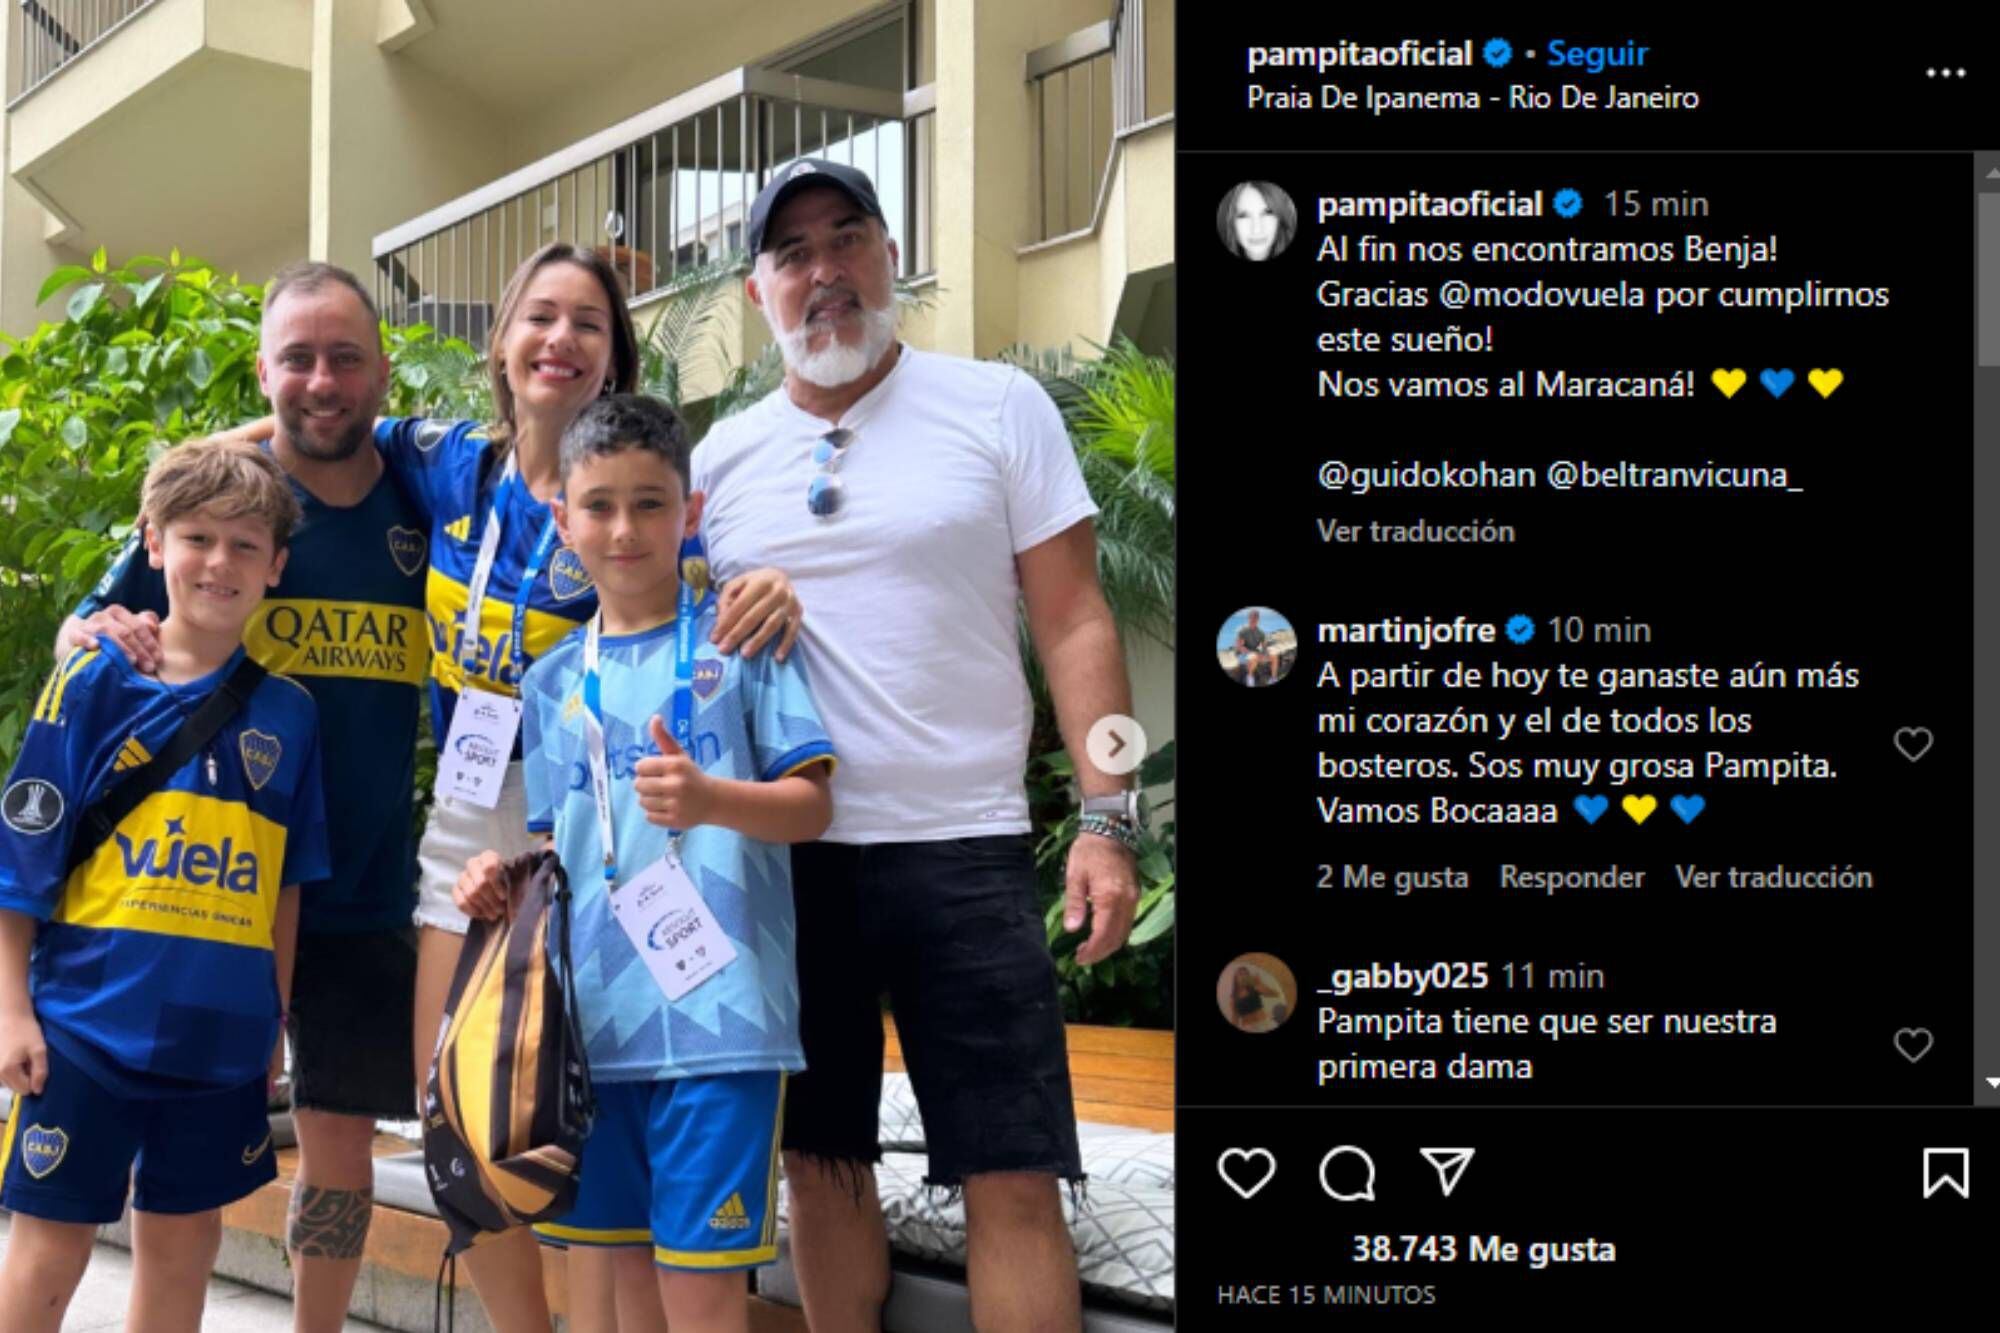 Pampita encontró al niño fan y le dio las entradas (Foto Instagram @pampitaoficial)